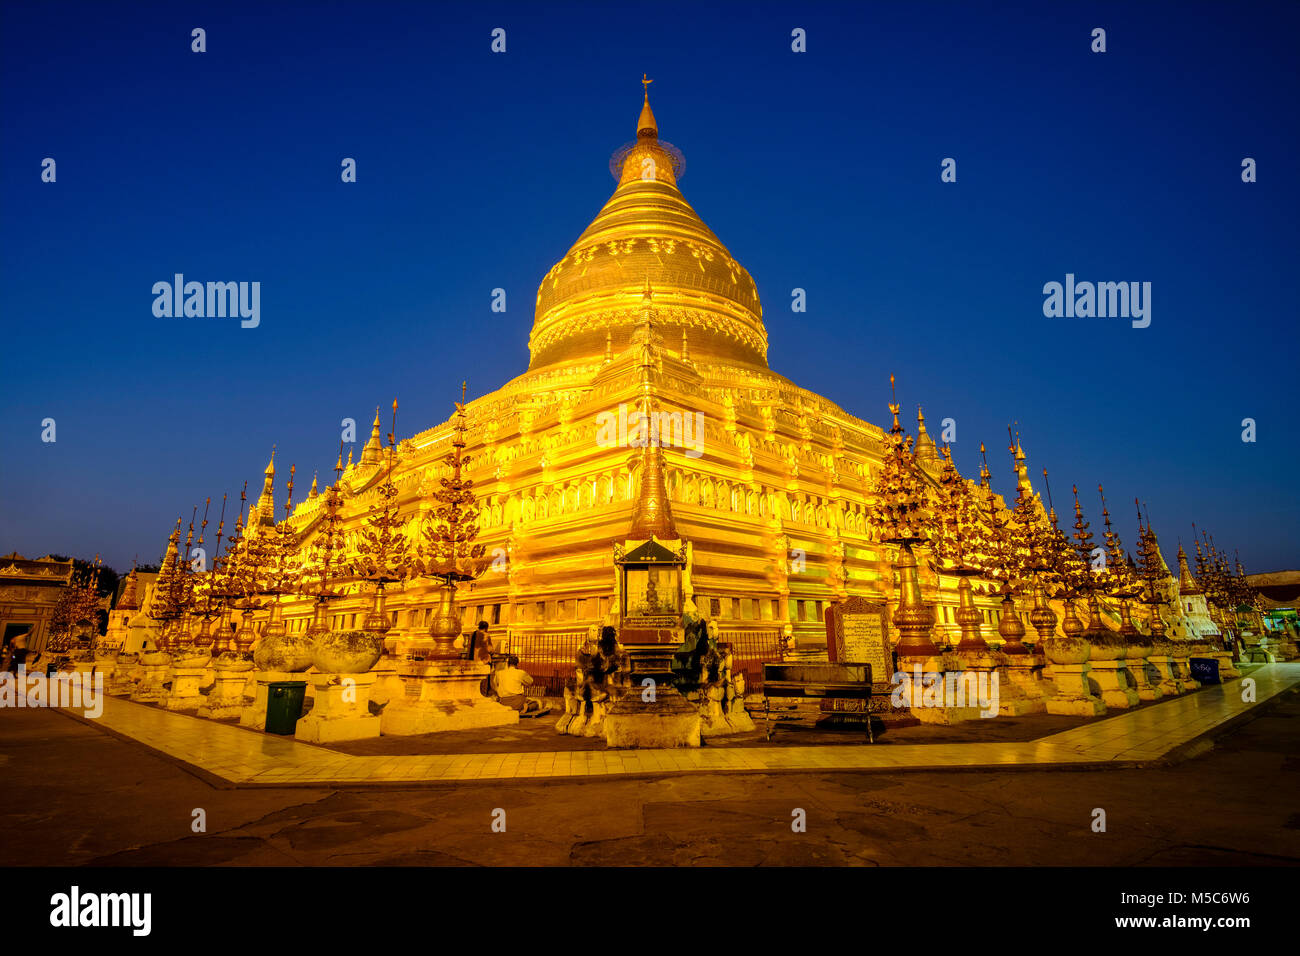 L'une des plus grandes pagodes de Bagan, la Pagode Shwezigon doré à Nyaung U, illuminé la nuit Banque D'Images